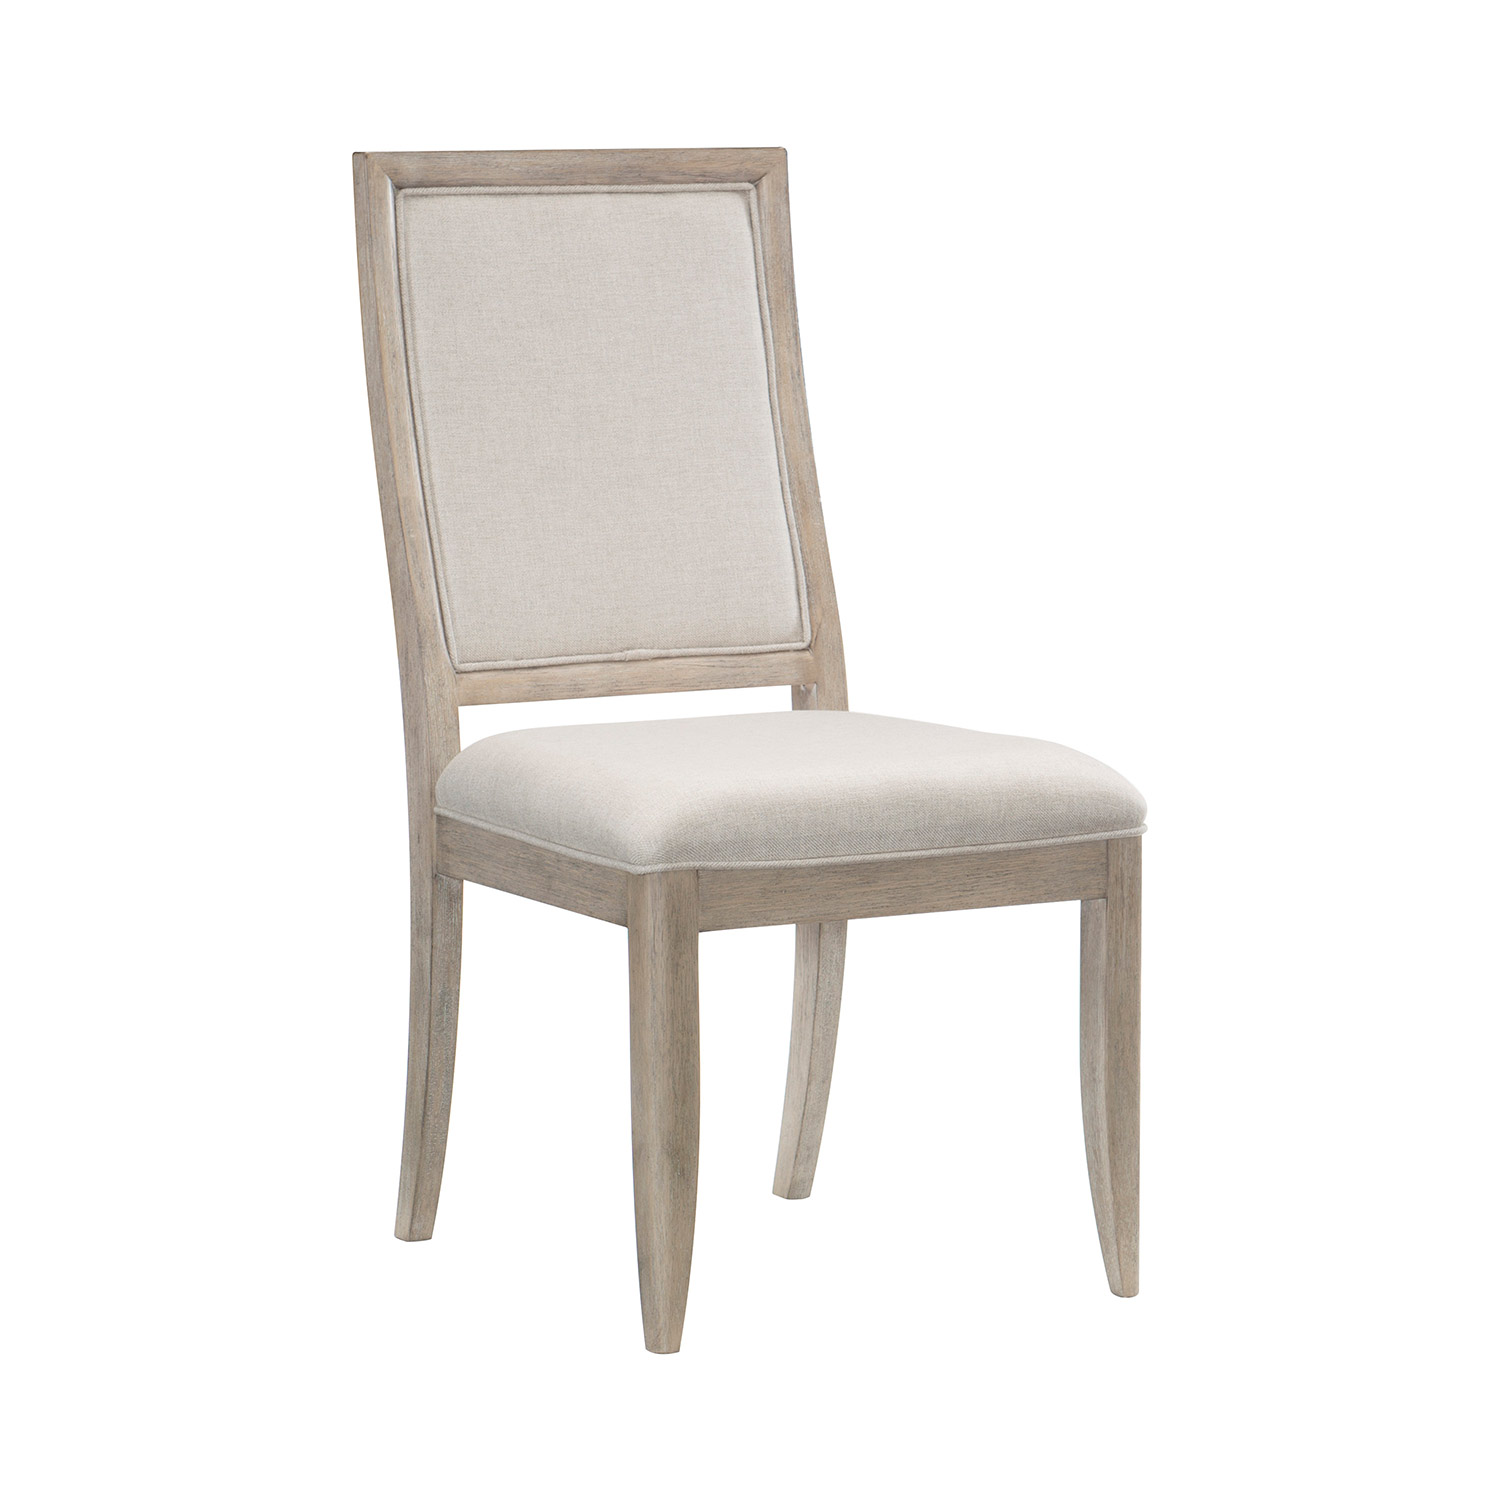 Homelegance McKewen Side Chair - Light Gray